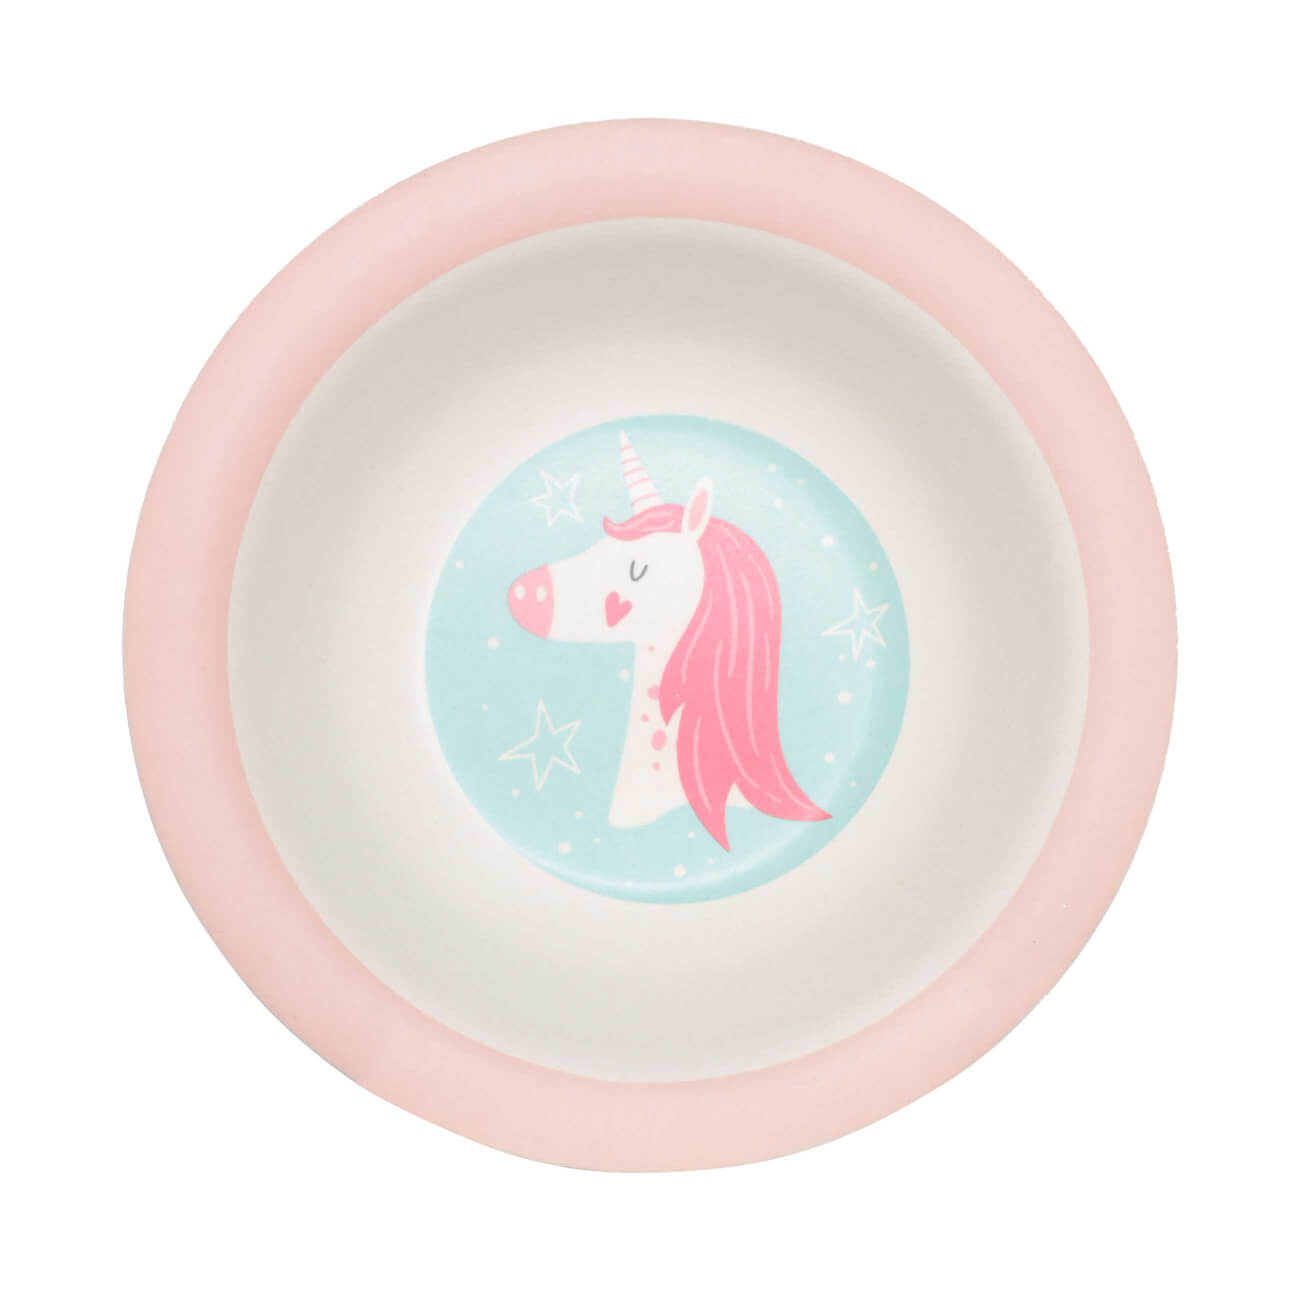 тарелка суповая детская 15х4 см бамбук розовая единорог unicorn Тарелка суповая, детская, 15 см, бамбук, розово-мятная, Единорог и звезды, Unicorn